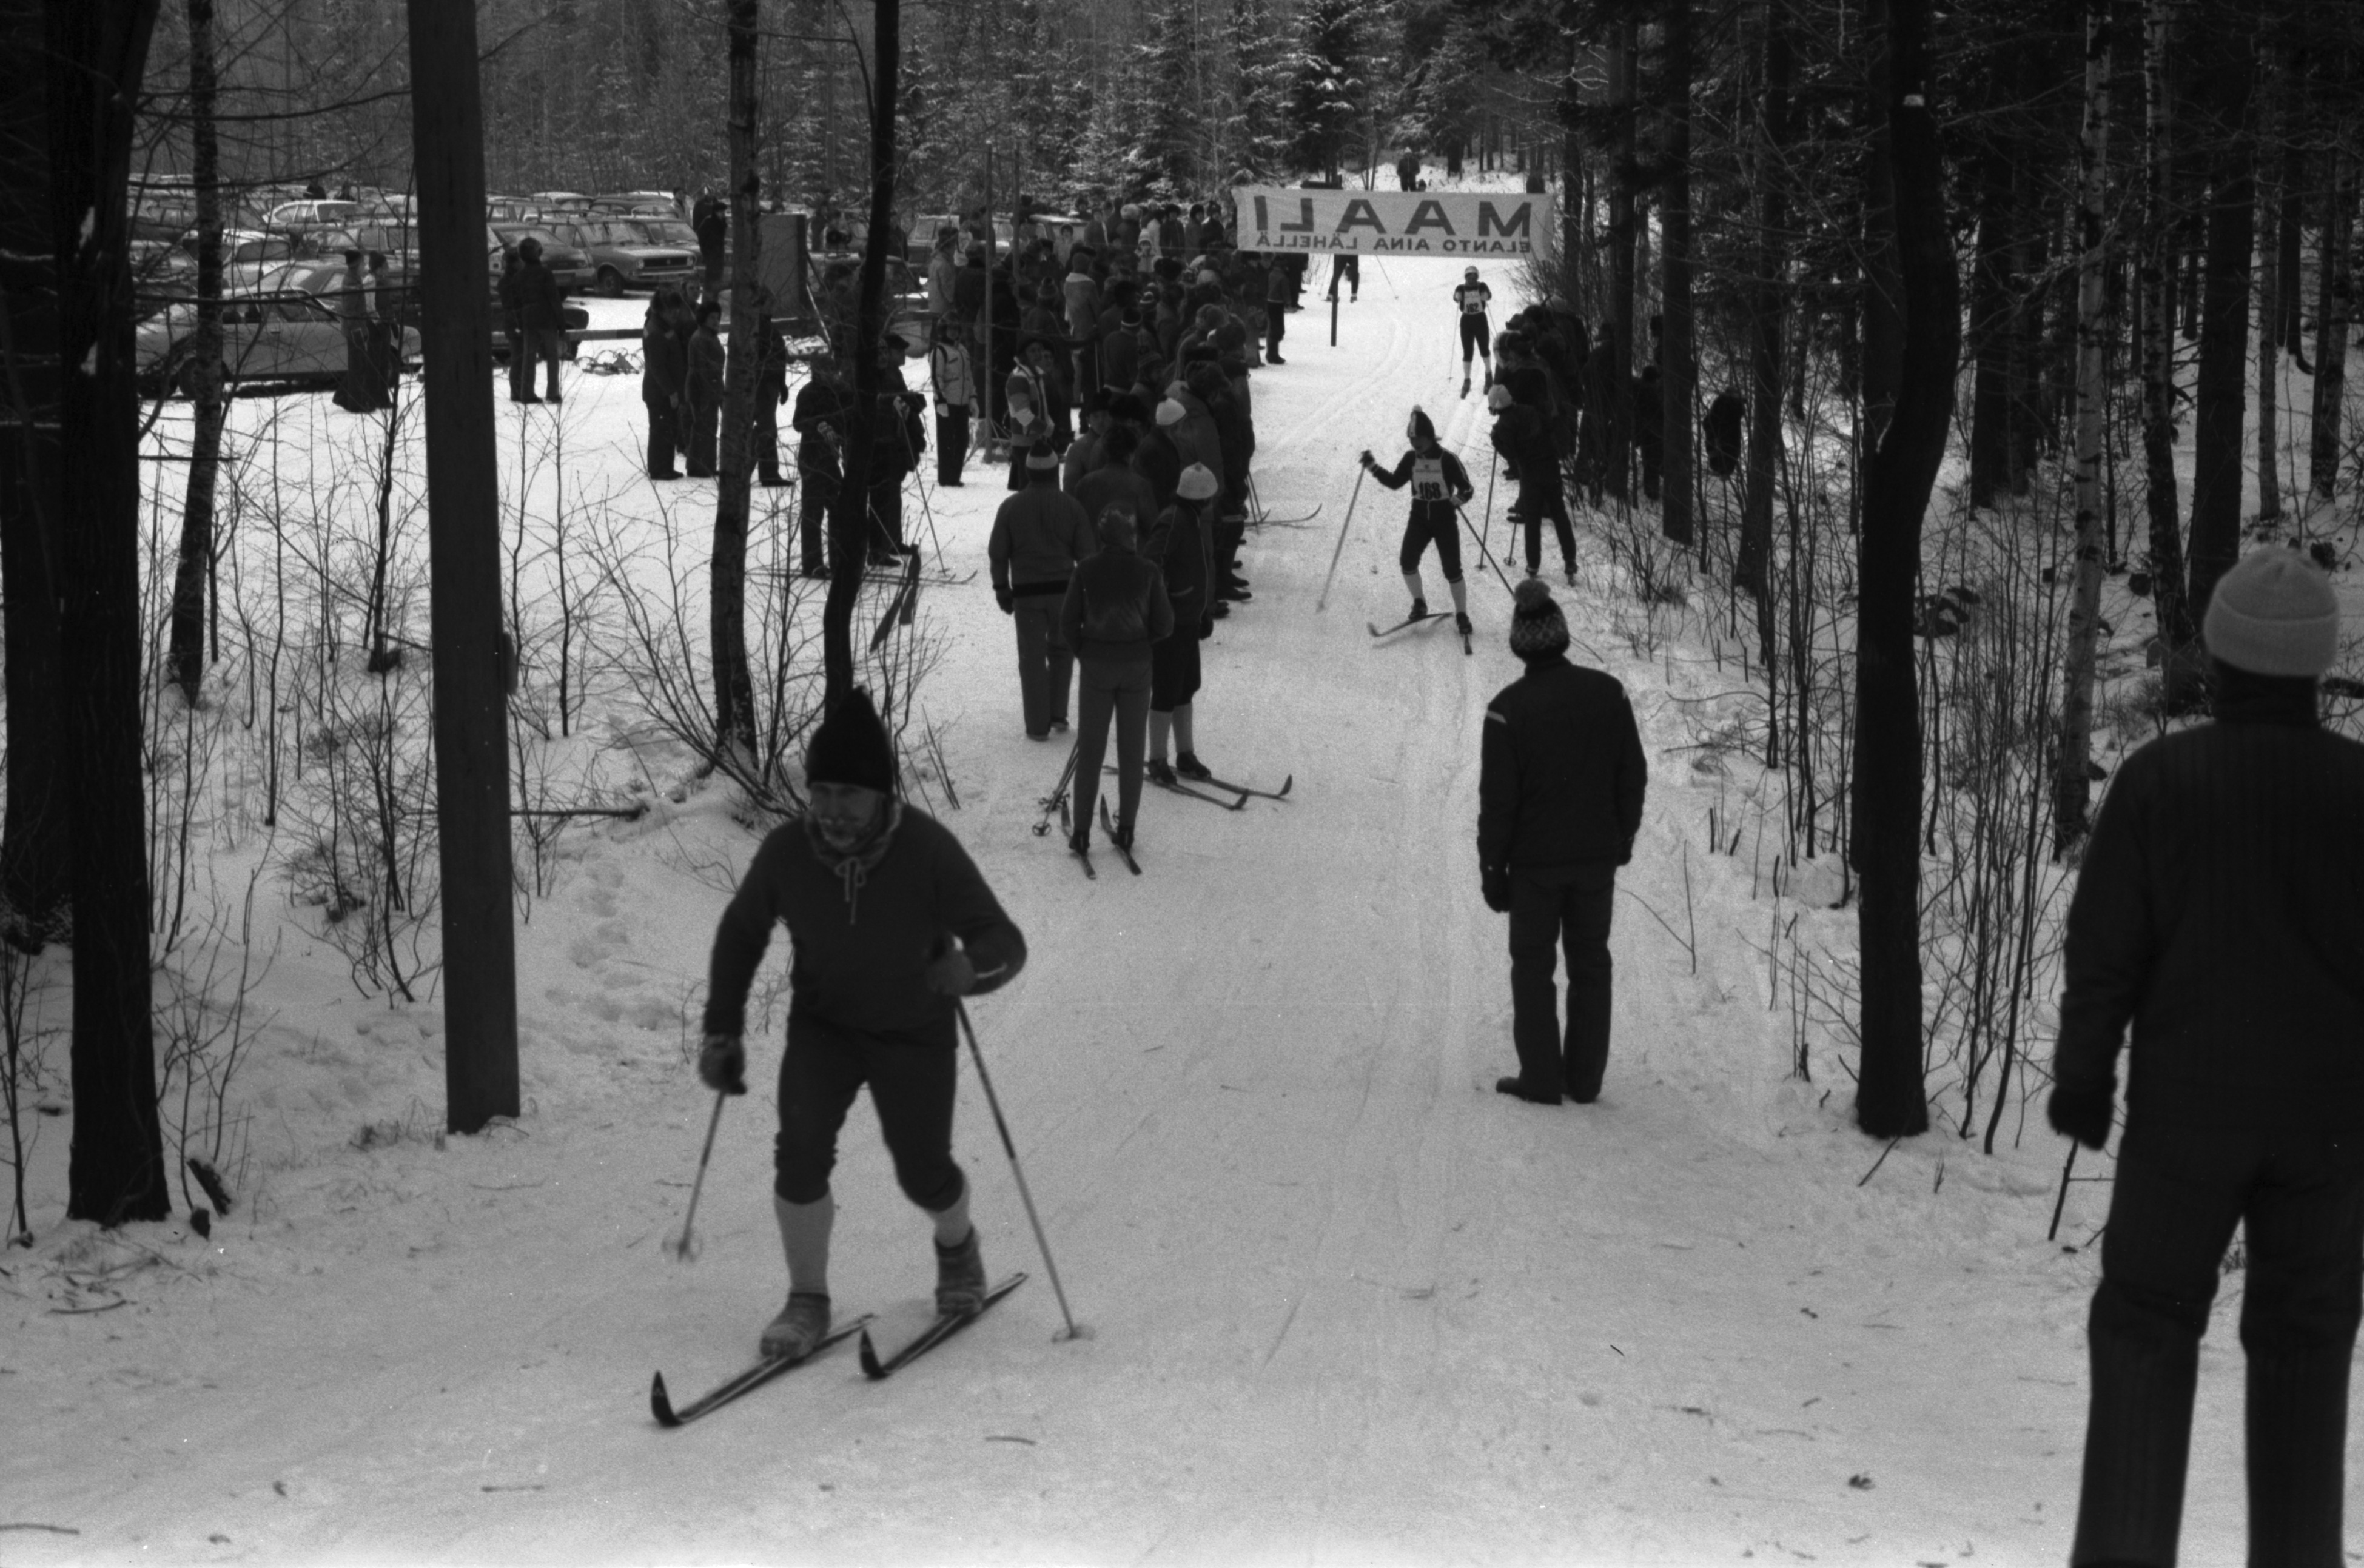 Pirkkolan urheilupuisto. Hiihtokilpailut Pirkkolan urheilupuistossa. Ihmisiä seuraamassa maaliin tulevia hiihtäjiä.